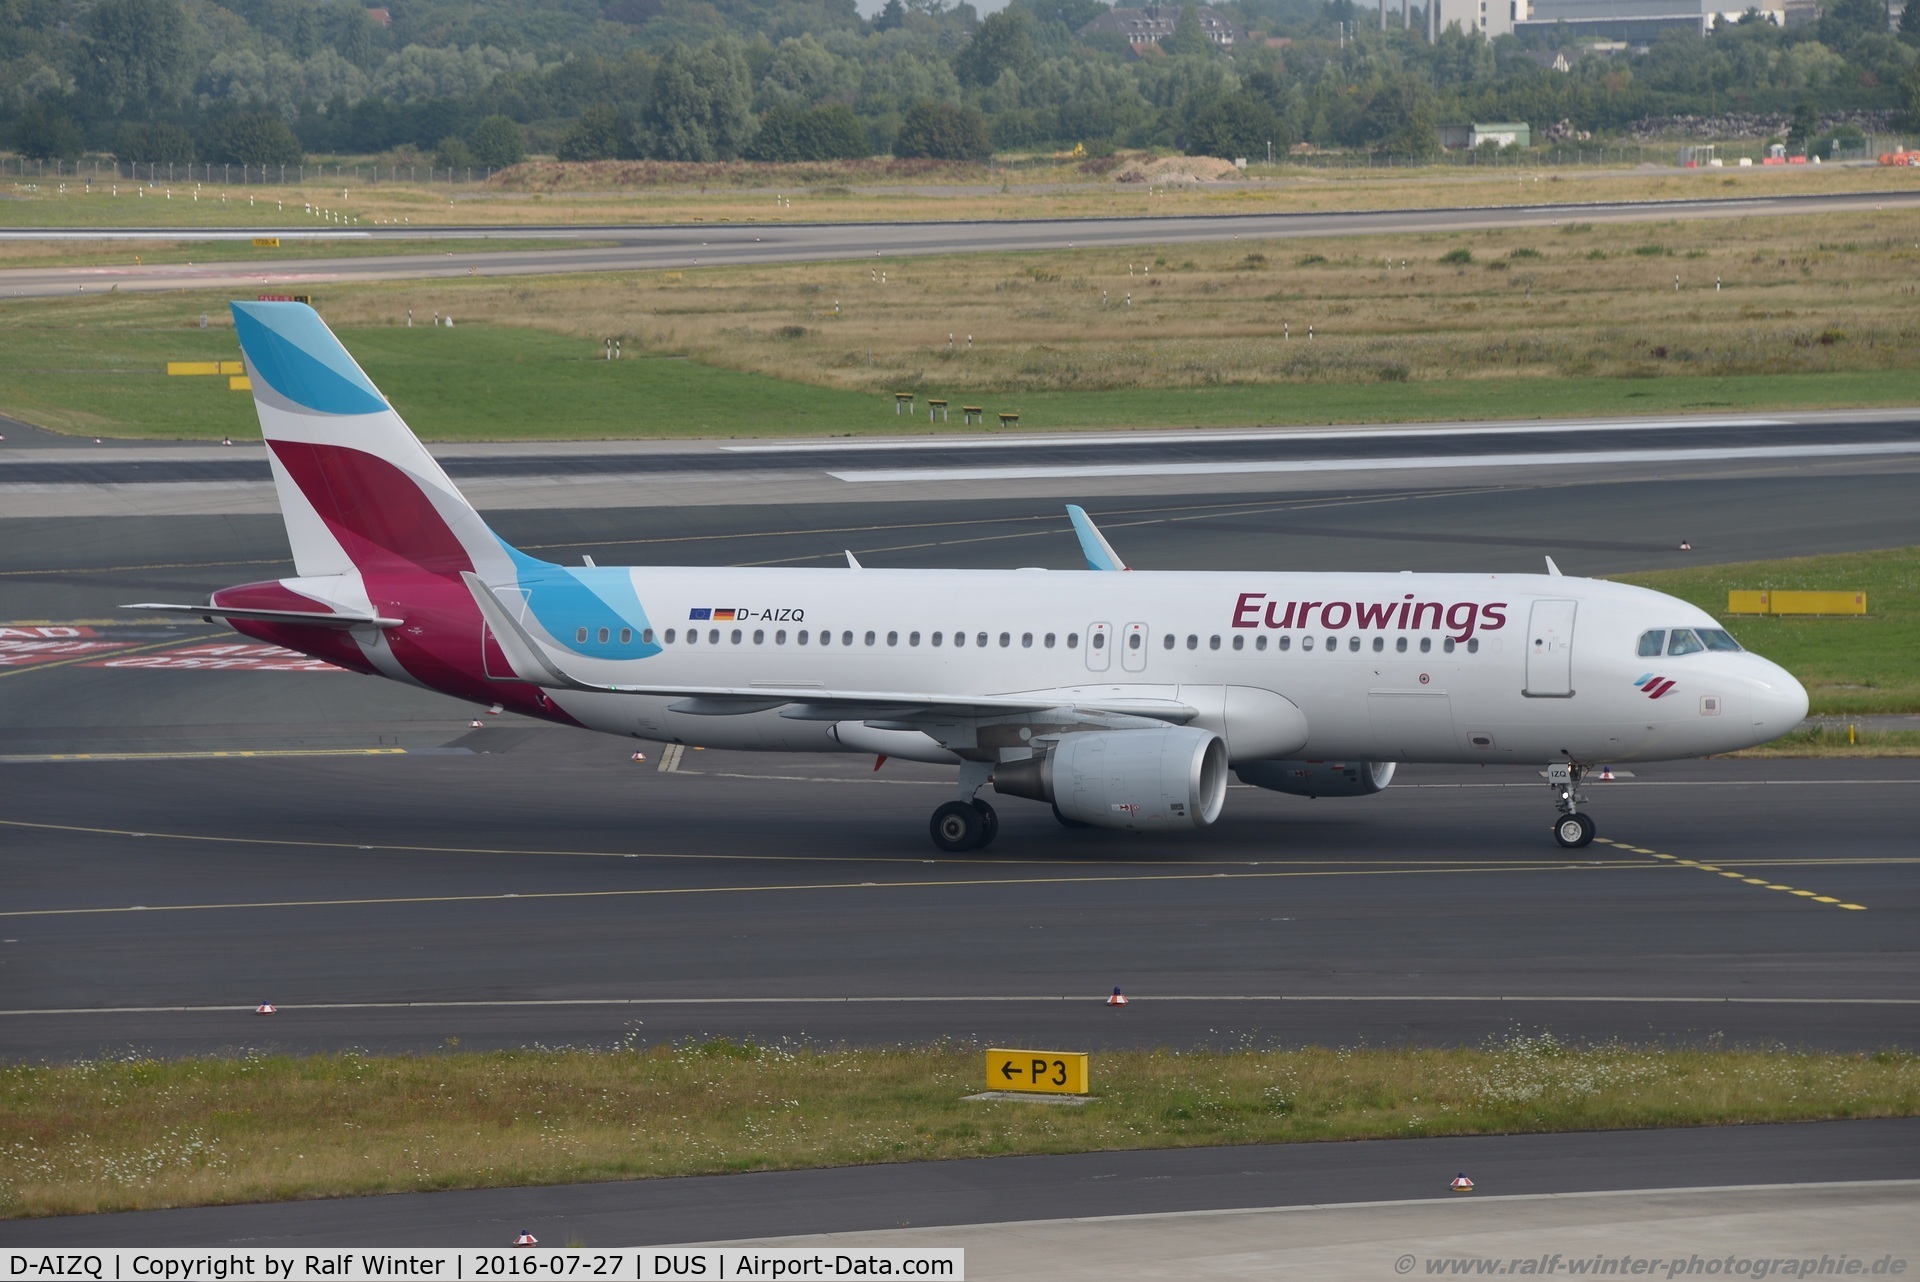 D-AIZQ, 2013 Airbus A320-214 C/N 5497, Airbus A320-214(W) - EW EWG Eurowings ex Lufthansa - 5497 - D-AIZQ - 27.07.2016 - DUS